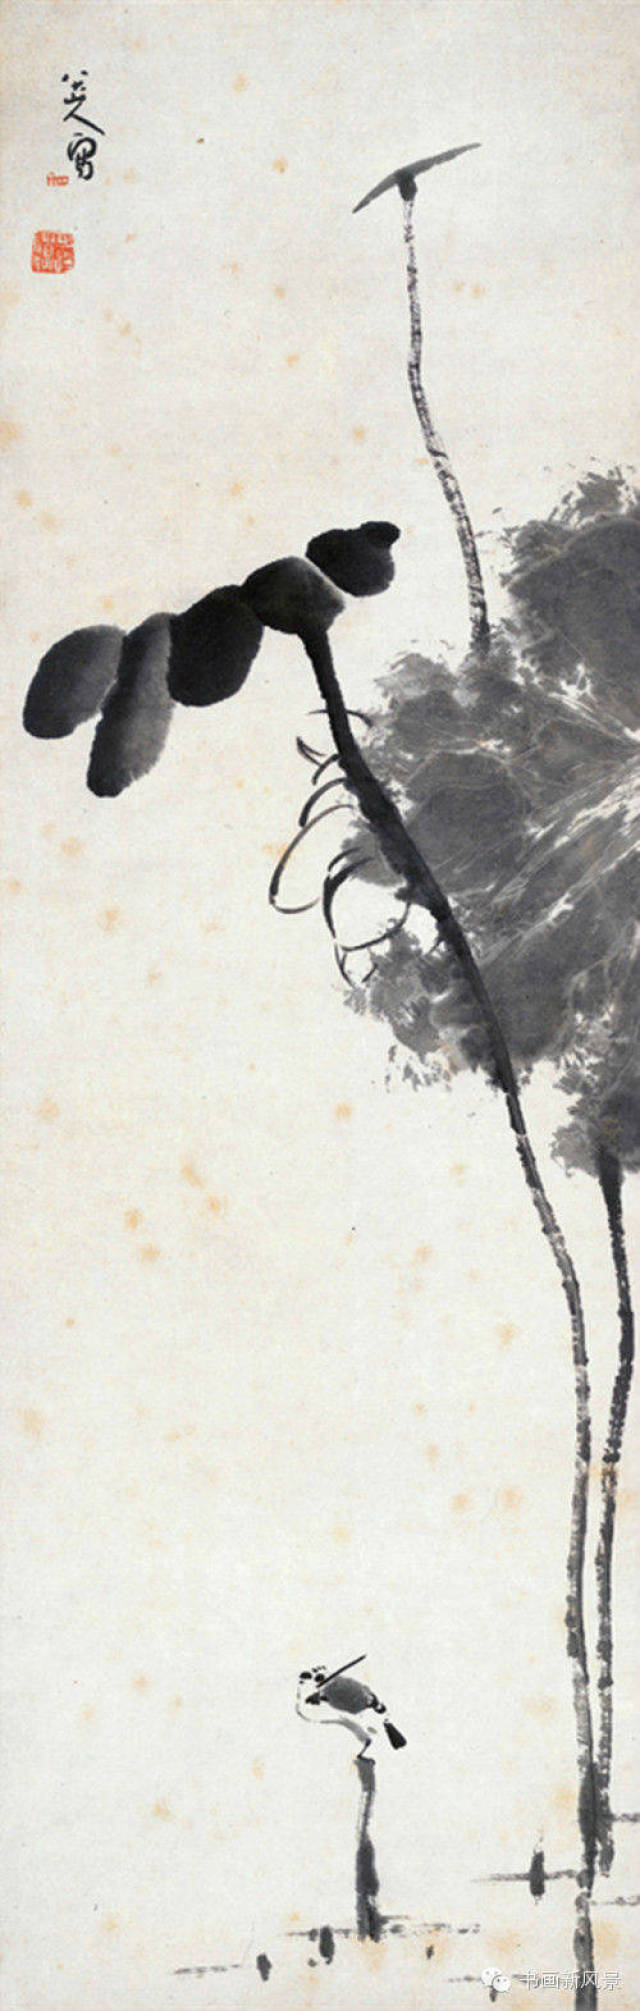 书画欣赏丨 八大山人的荷花小鸟,这才是中国水墨!